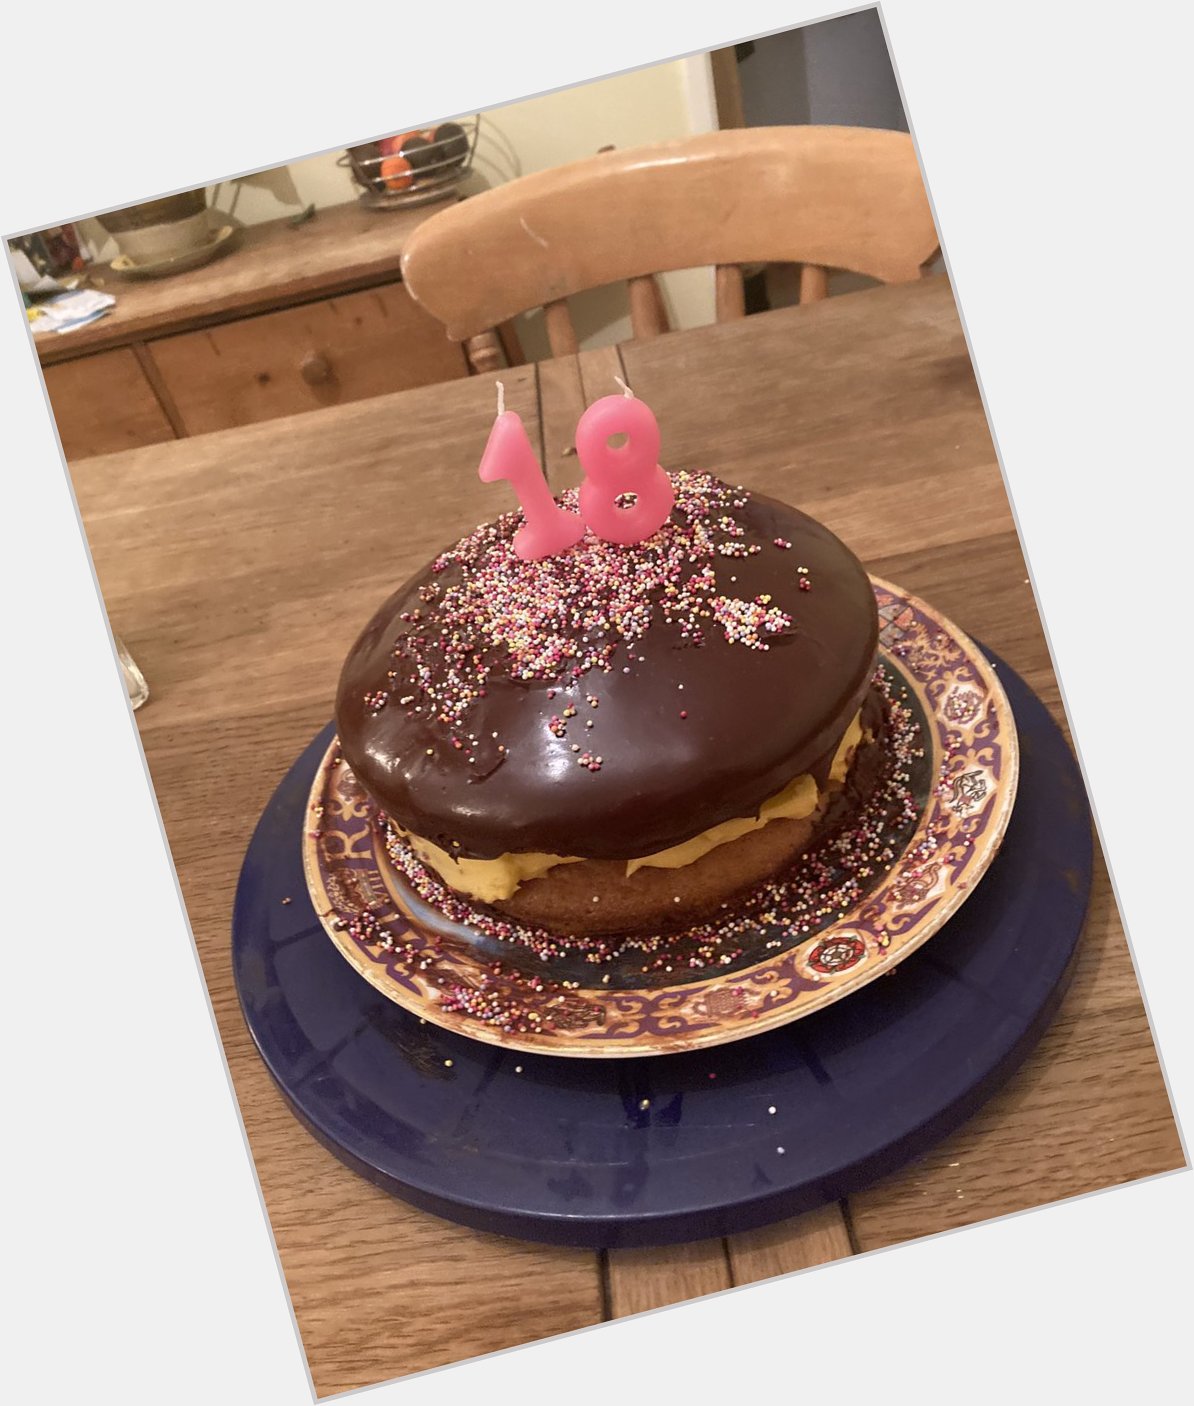 My mum s version of your birthday cake. Happy Birthday and x 